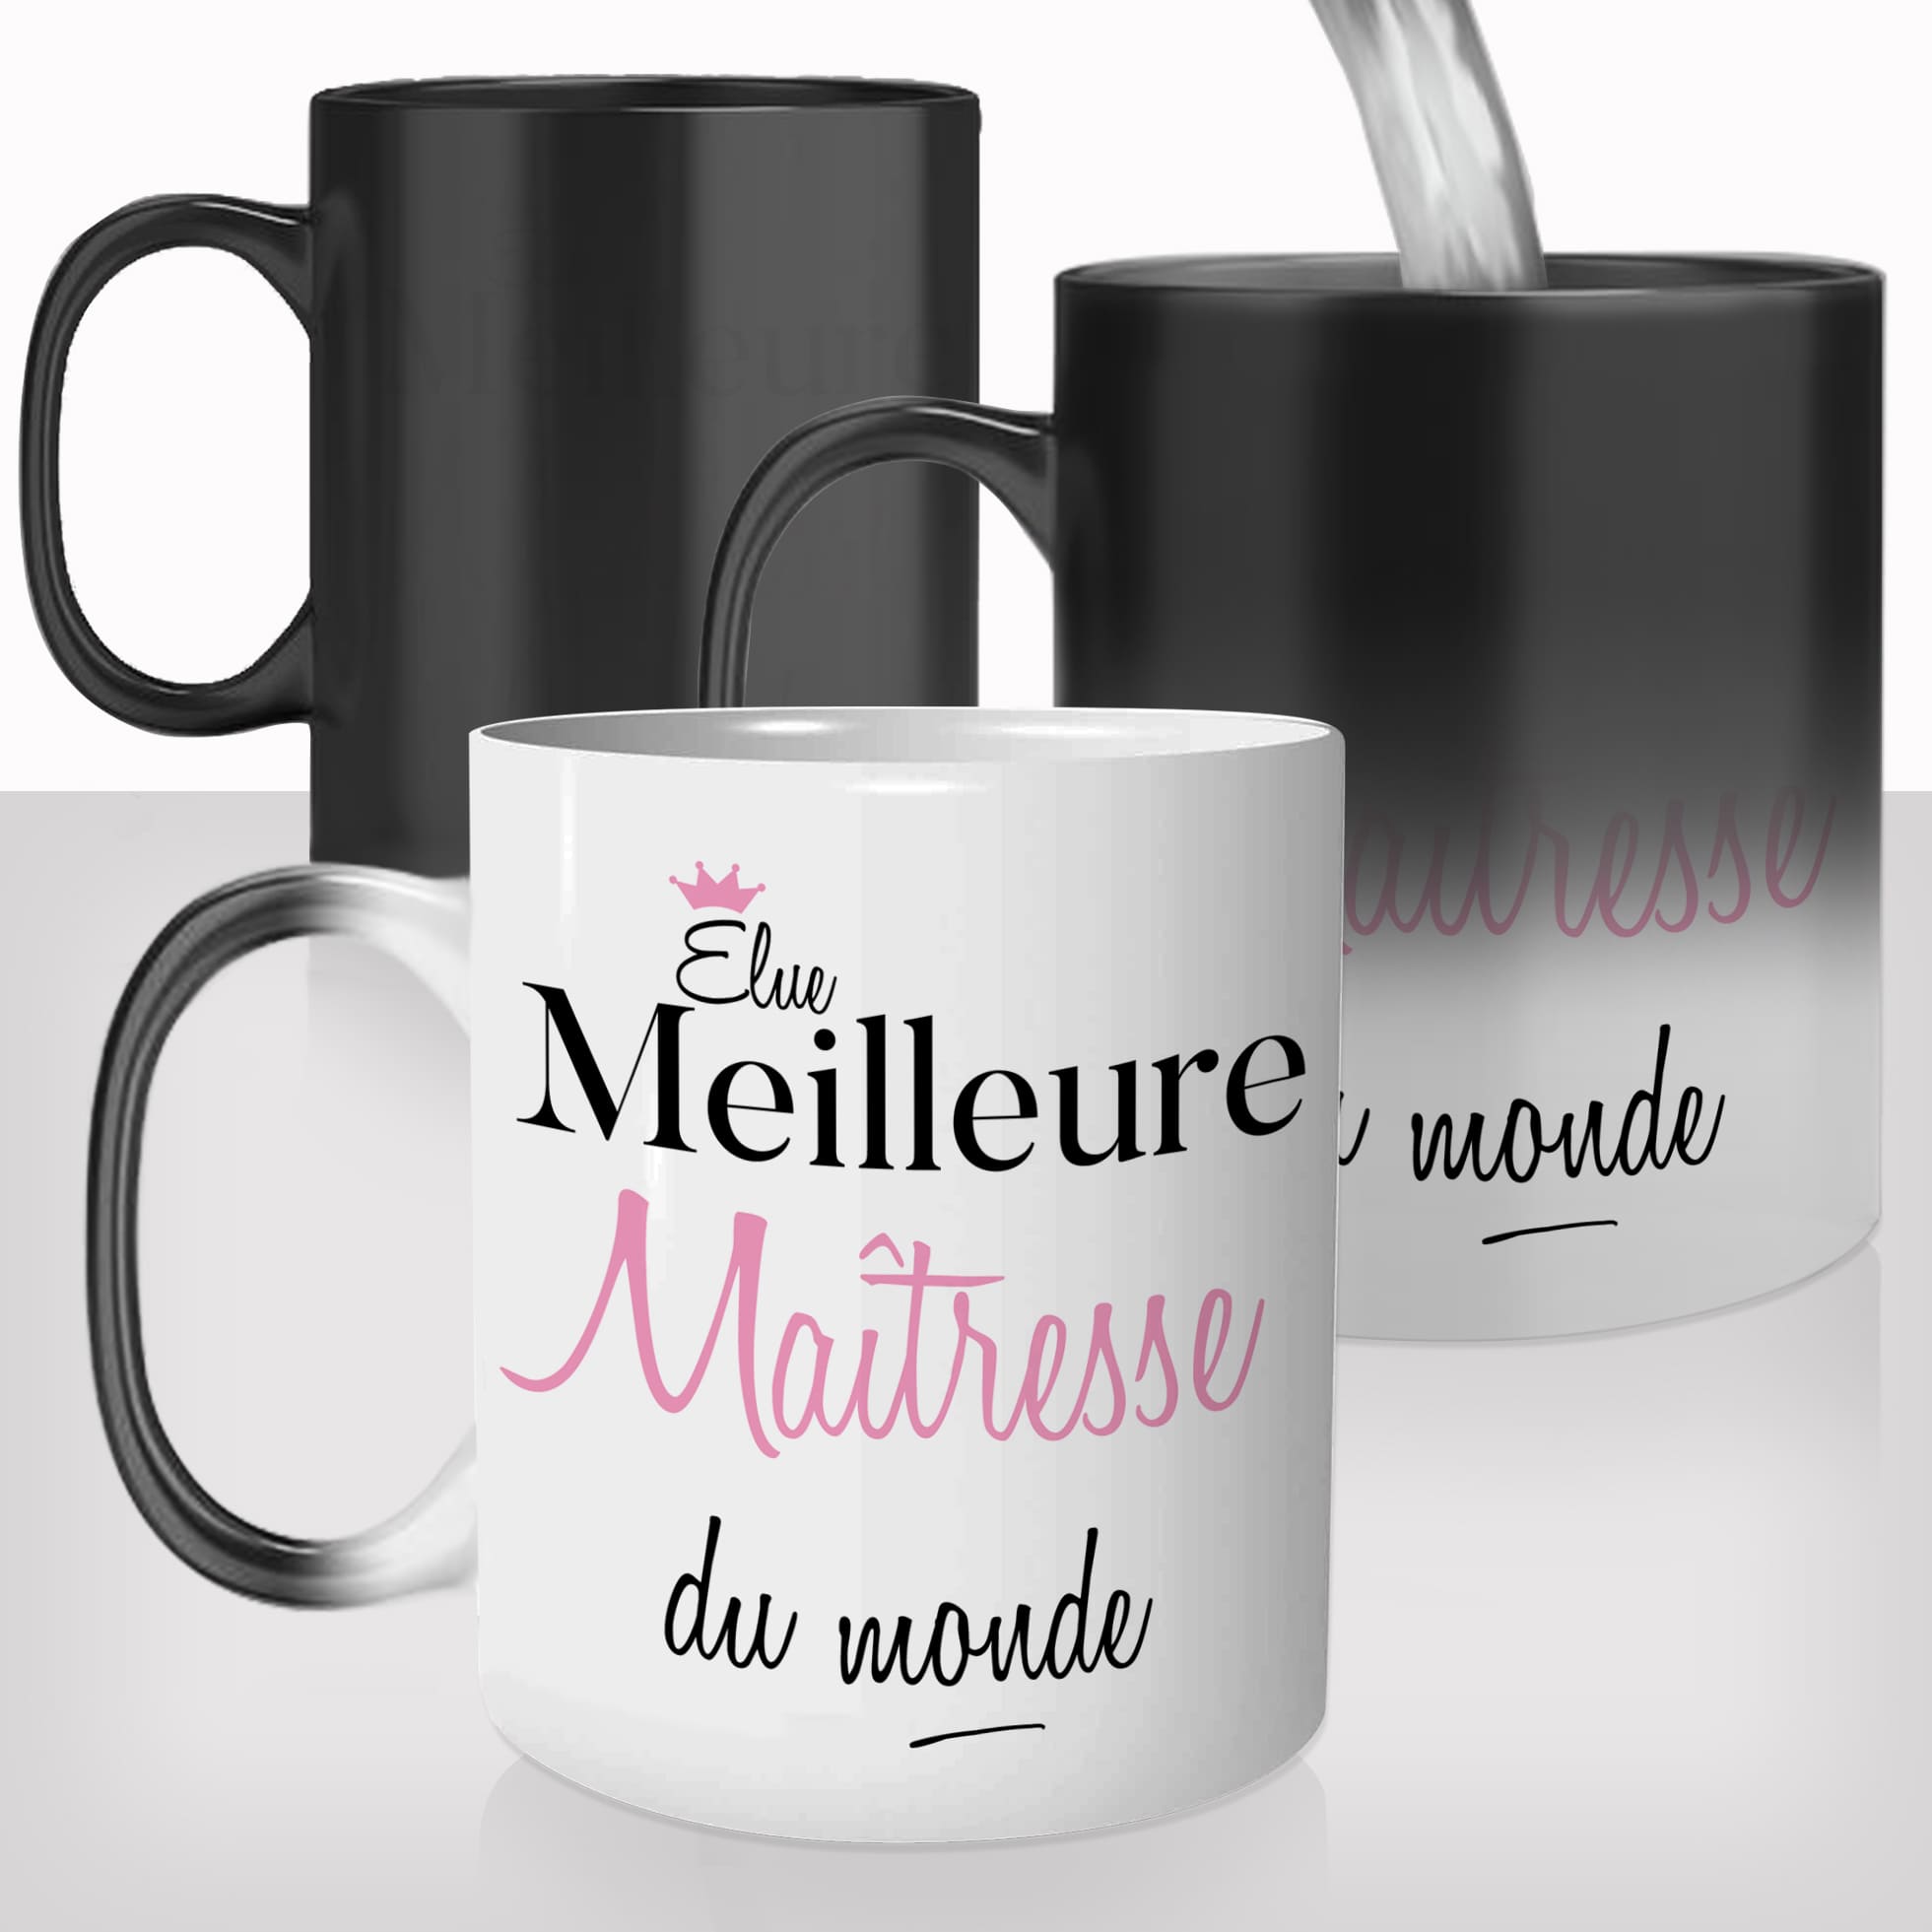 mug-magique-personnalisable-thermoreactif-thermique-elue-meilleure-maitresse-école-prof-femme-métier-personnalisé-idée-cadeau-original